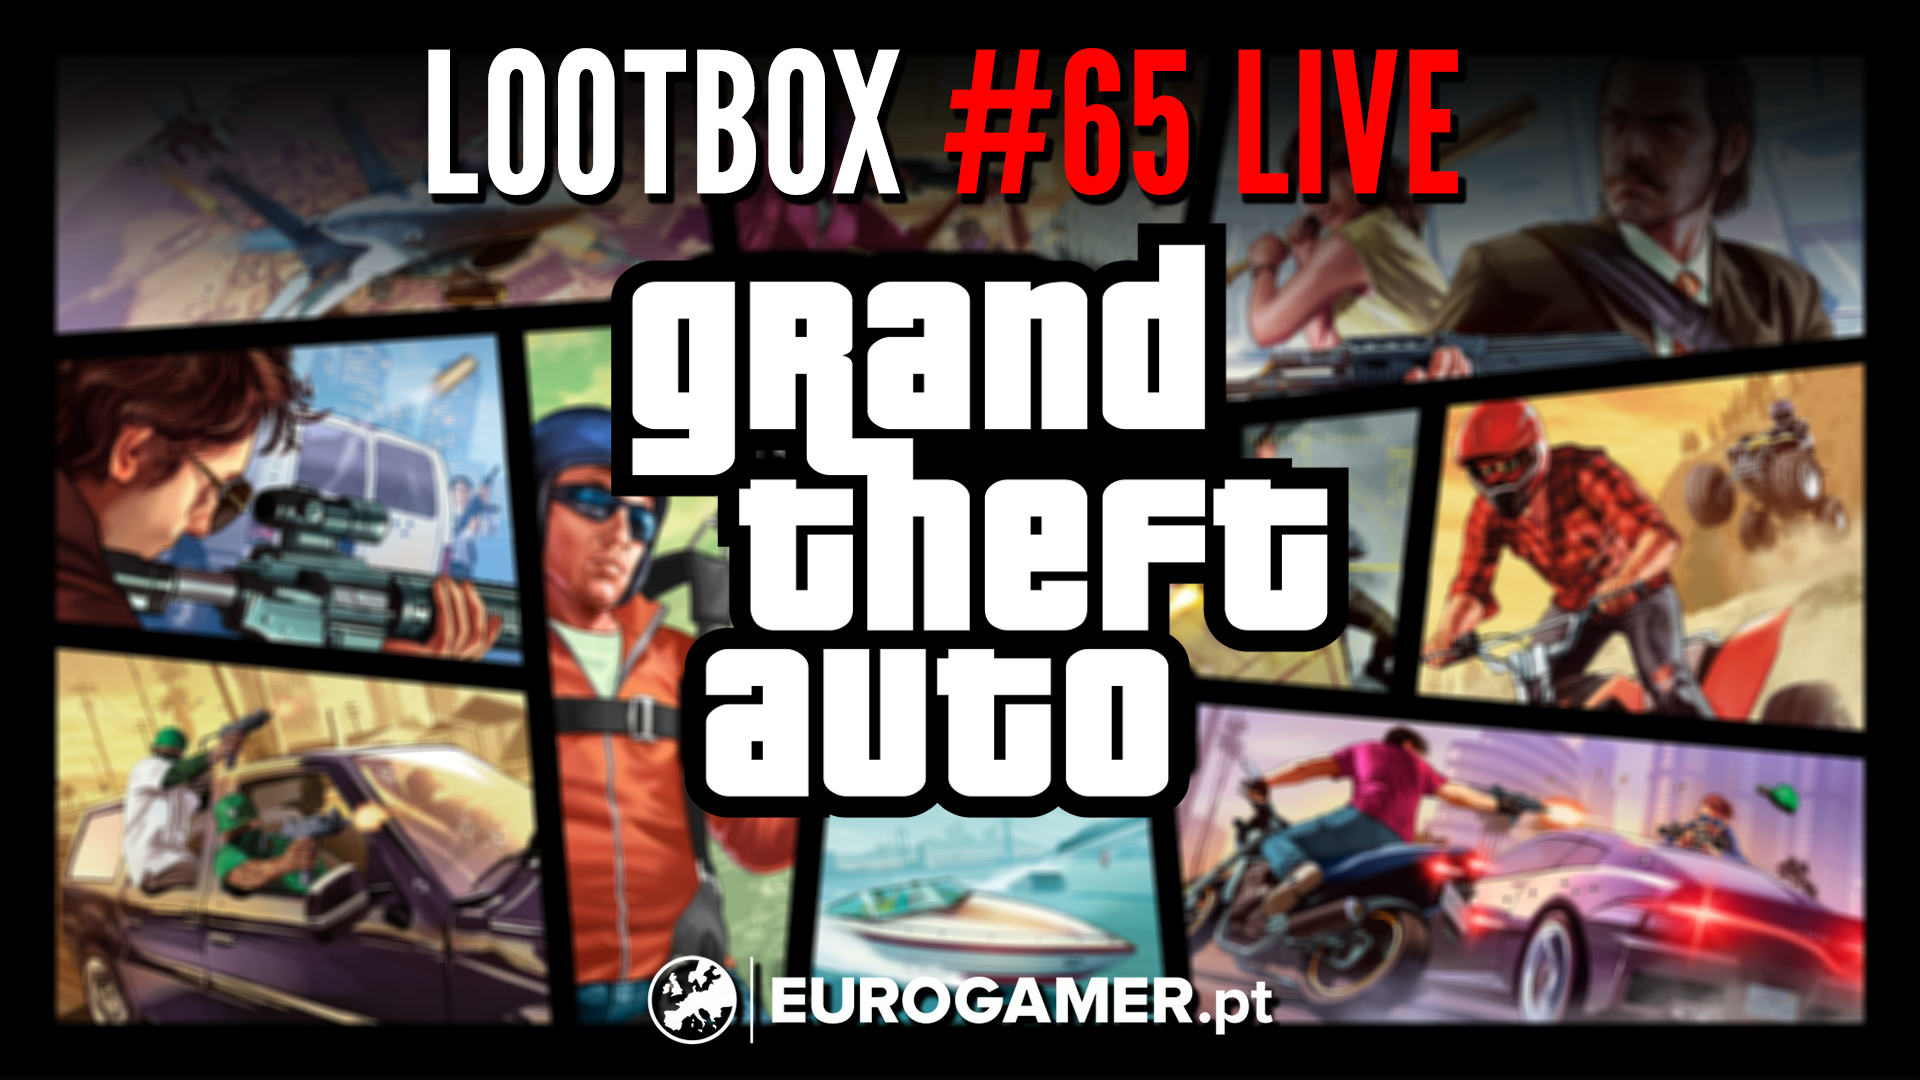 Imagem para Lootbox #65 LIVE - Tudo sobre Grand Theft Auto 6